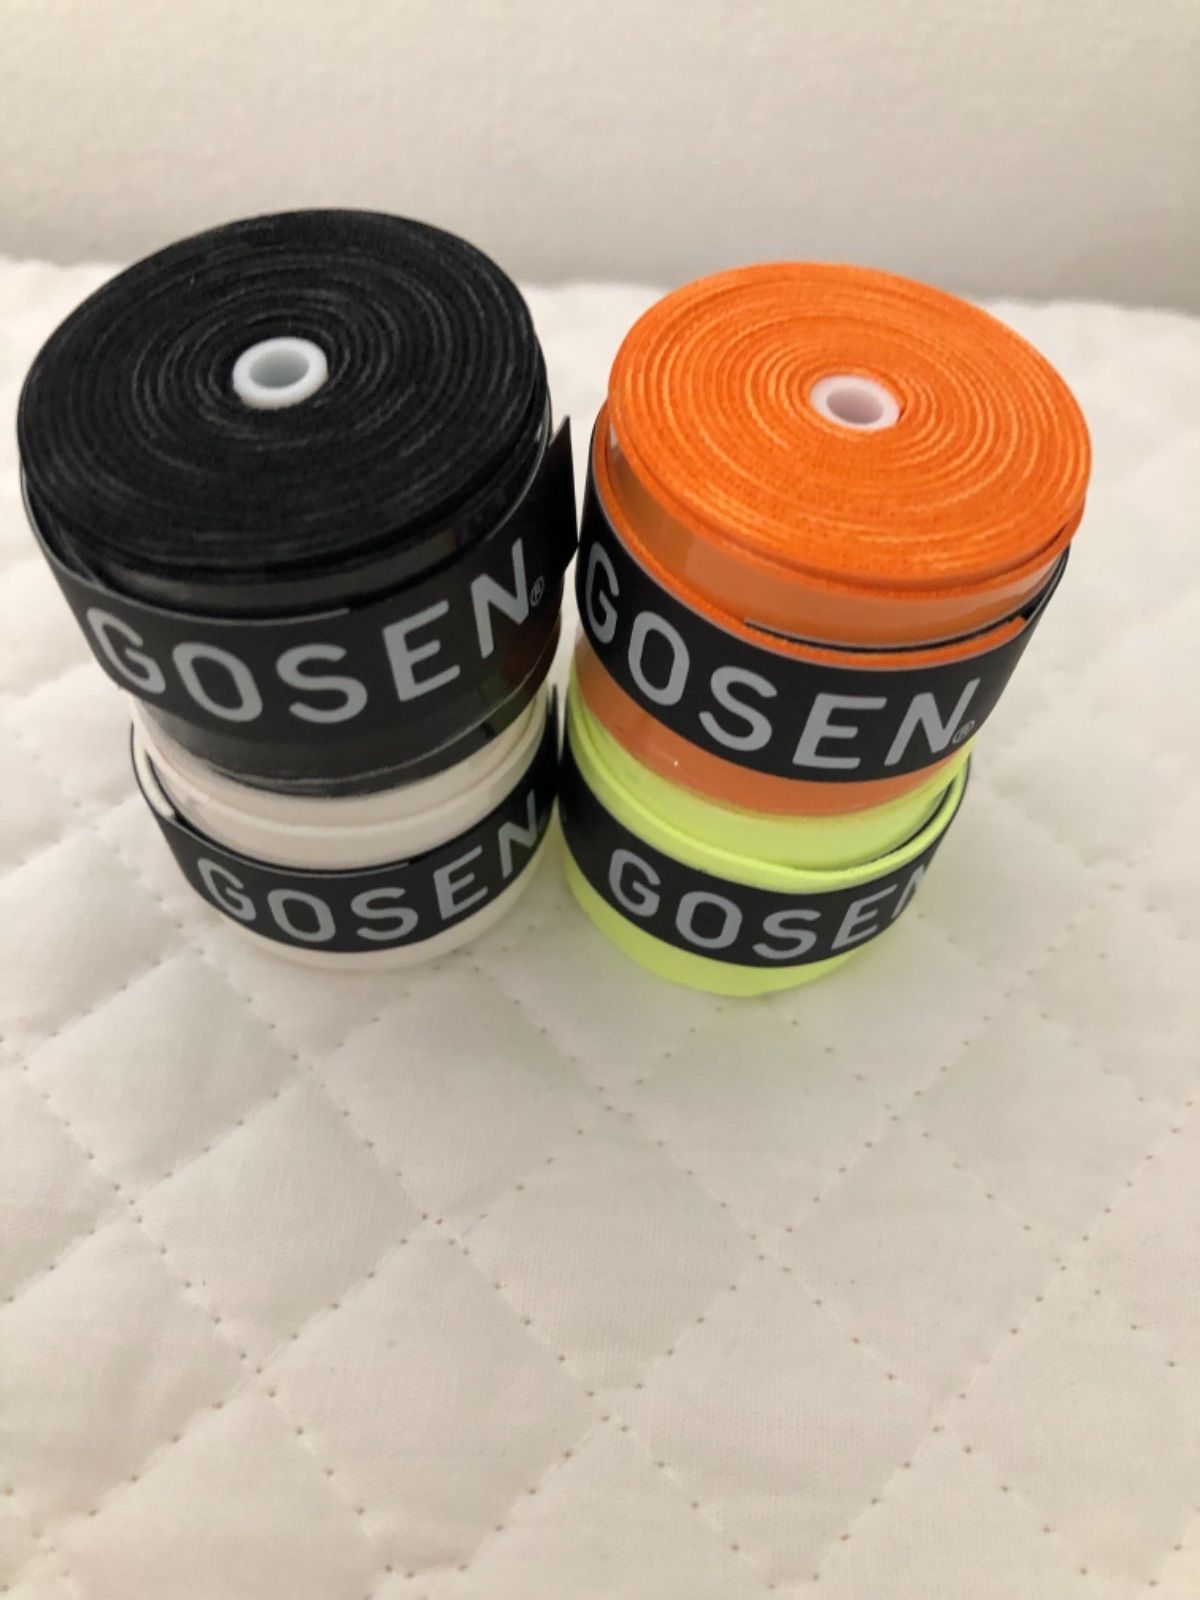 ゴーセングリップテープ黒と白各1個とオレンジ2個計4個